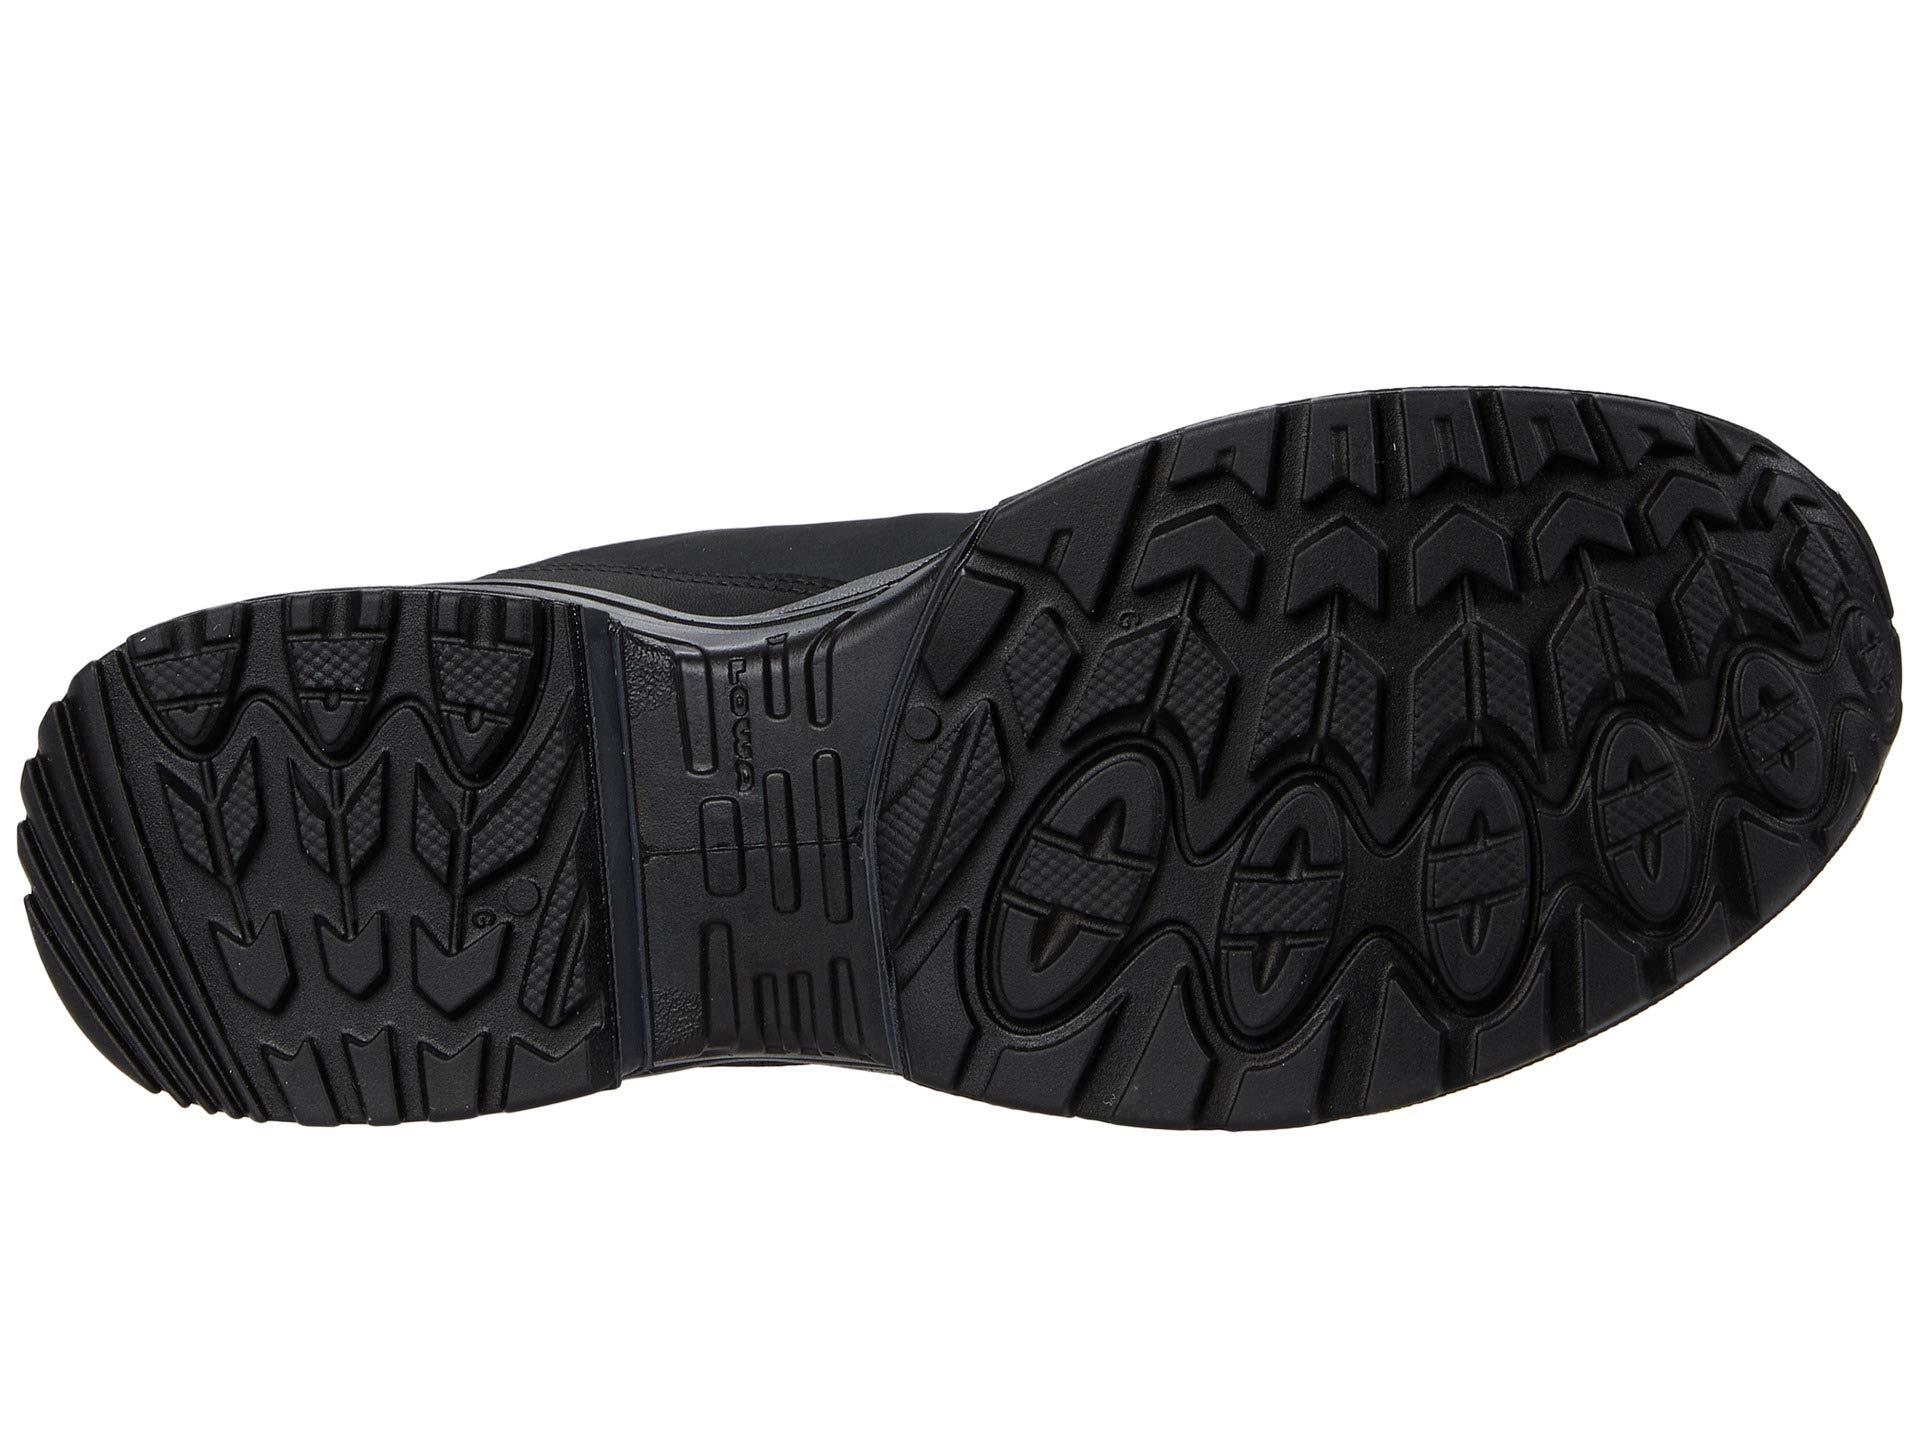 Lowa Leather Walker Gtx Low-top sneakers in Black for Men - Lyst